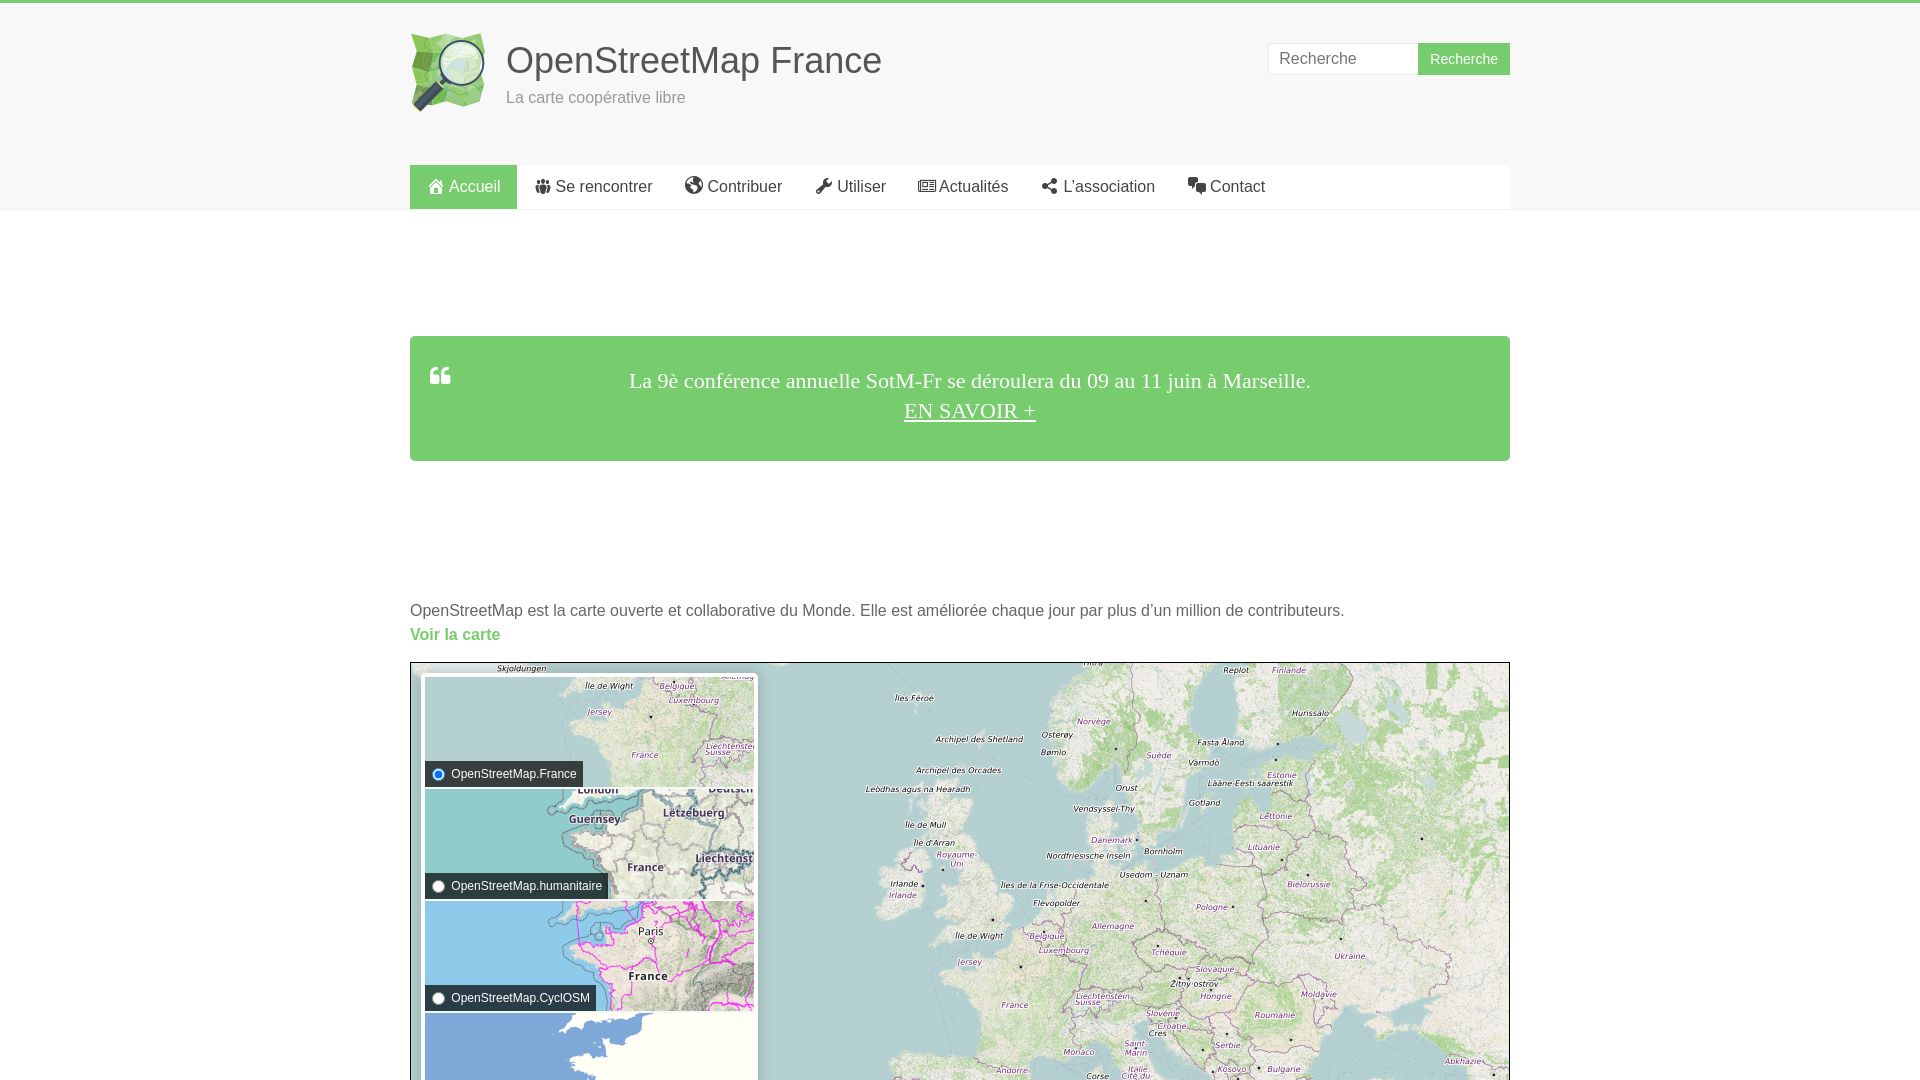 网站状态 openstreetmap.fr 是  在线的